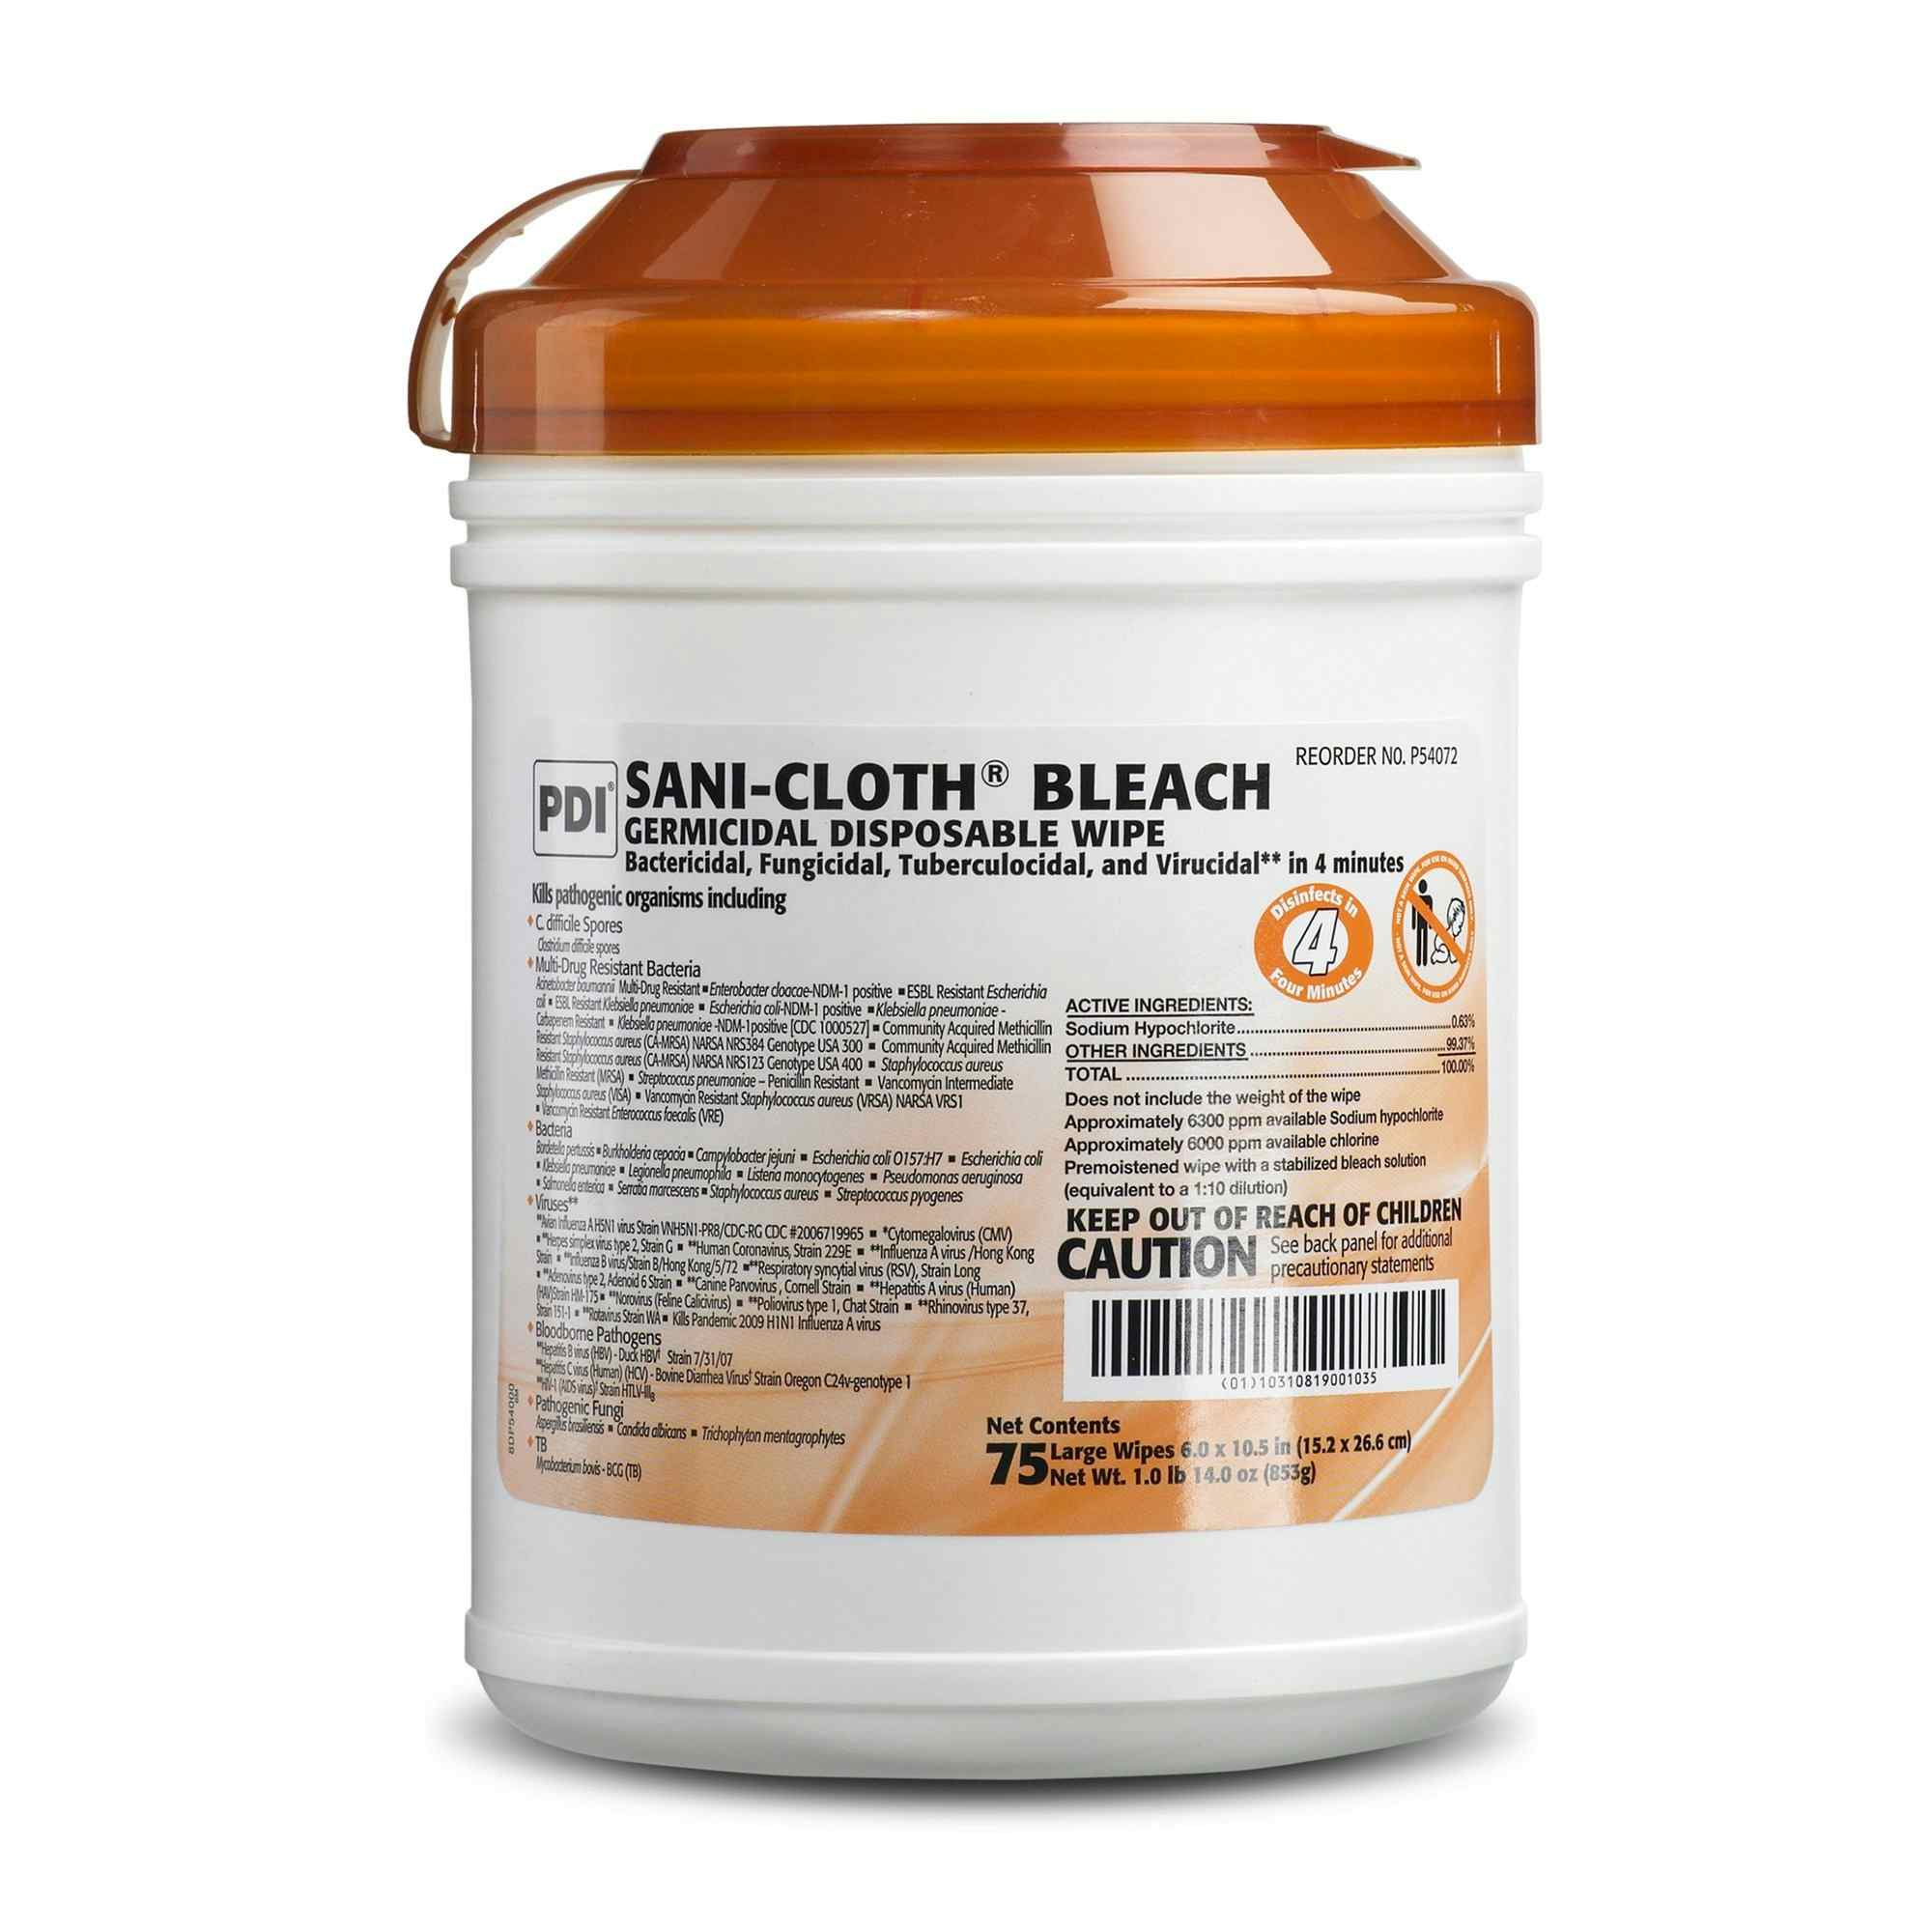 Sani-Cloth Bleach Germicidal Disposable Wipe